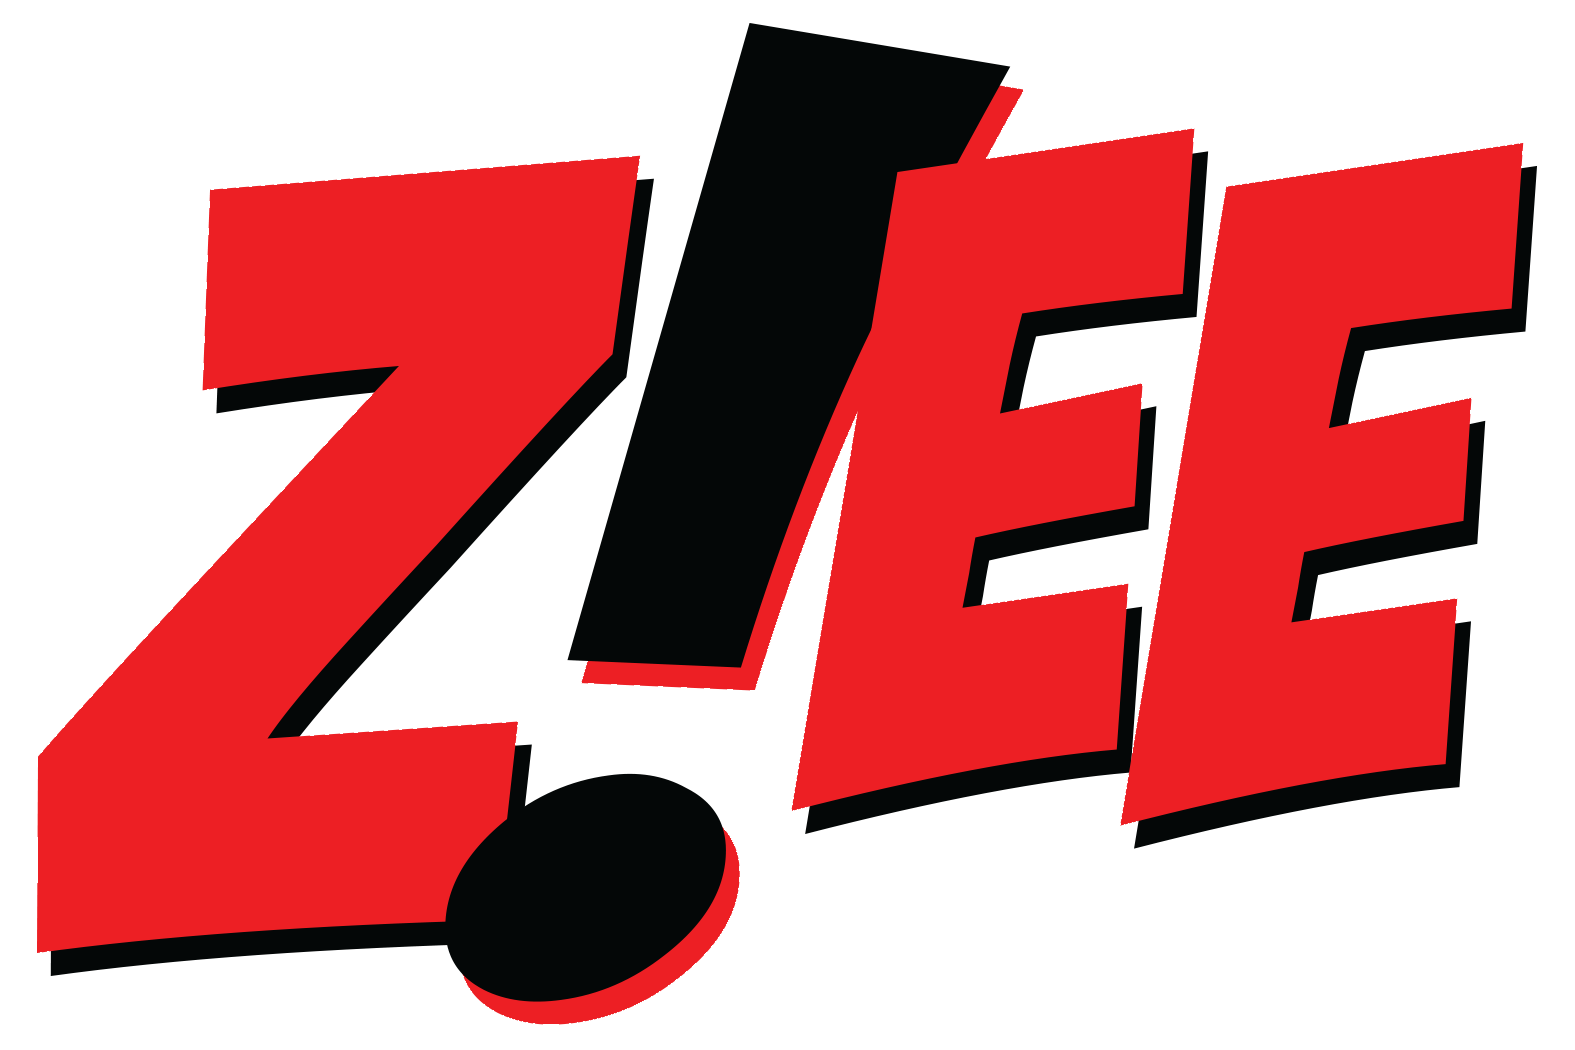 Z!EE